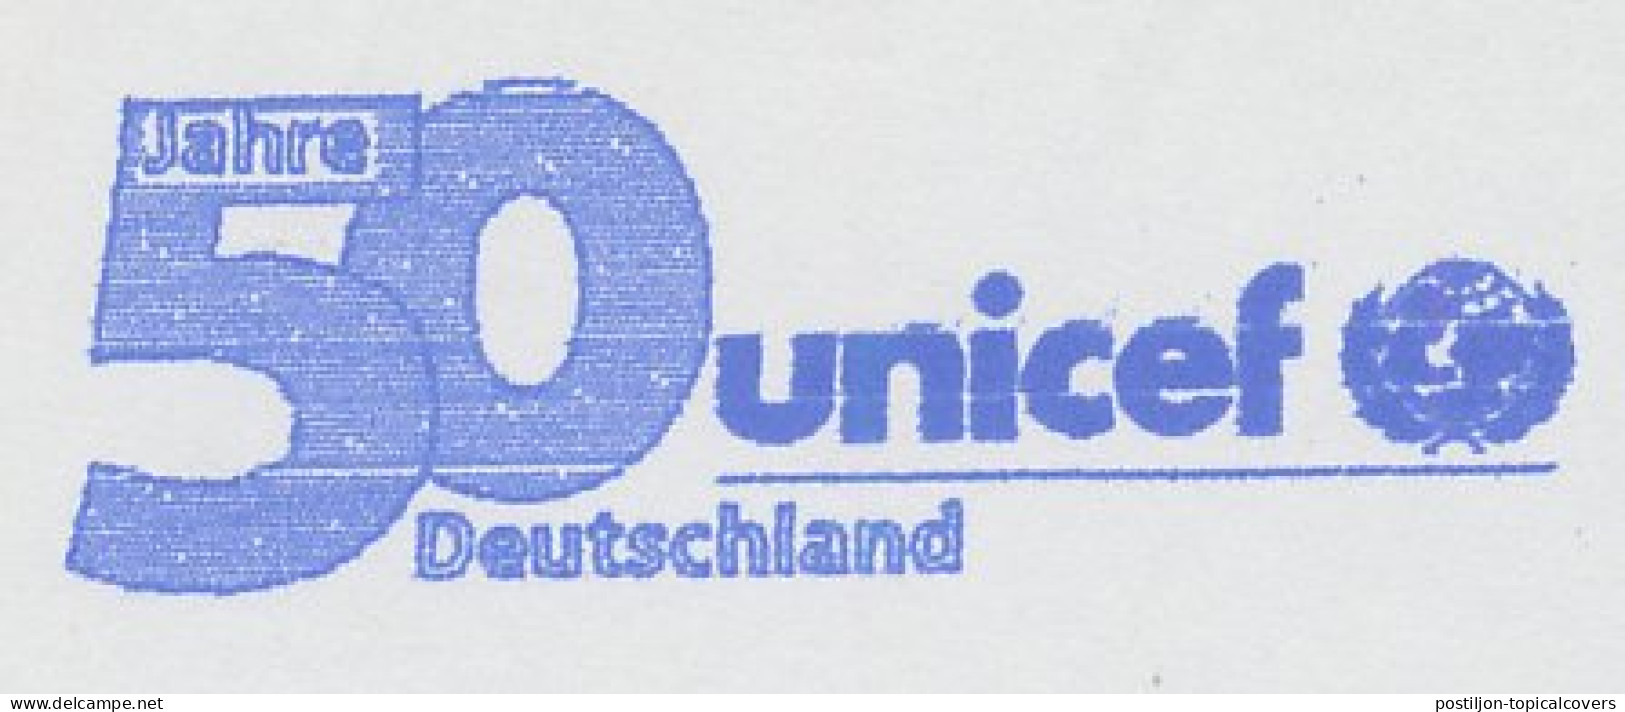 Meter Cut Germany 2003 UNICEF - 50 Years - VN